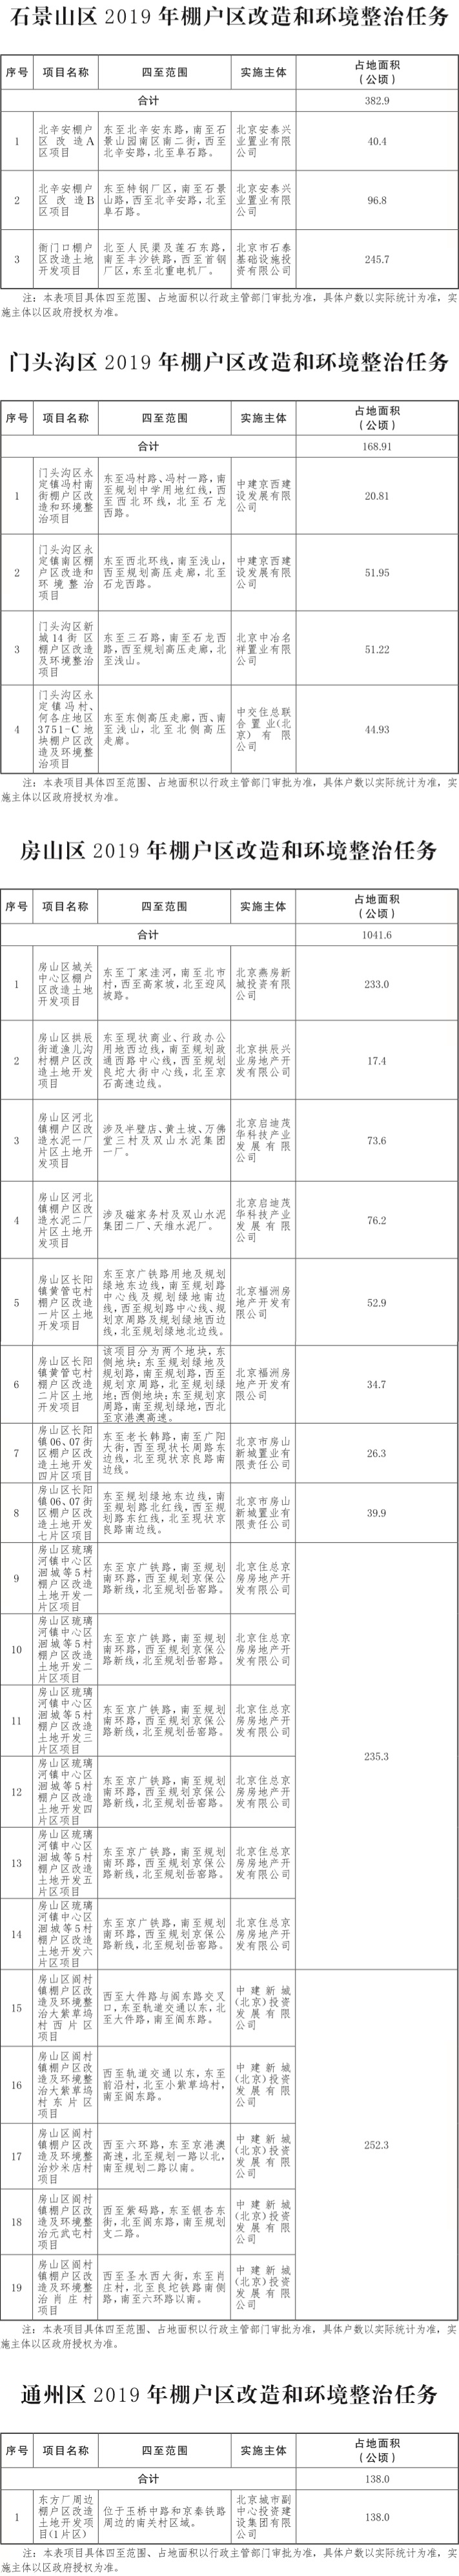 17-北京市2019年棚户区改造和环境整治任务-003.jpg